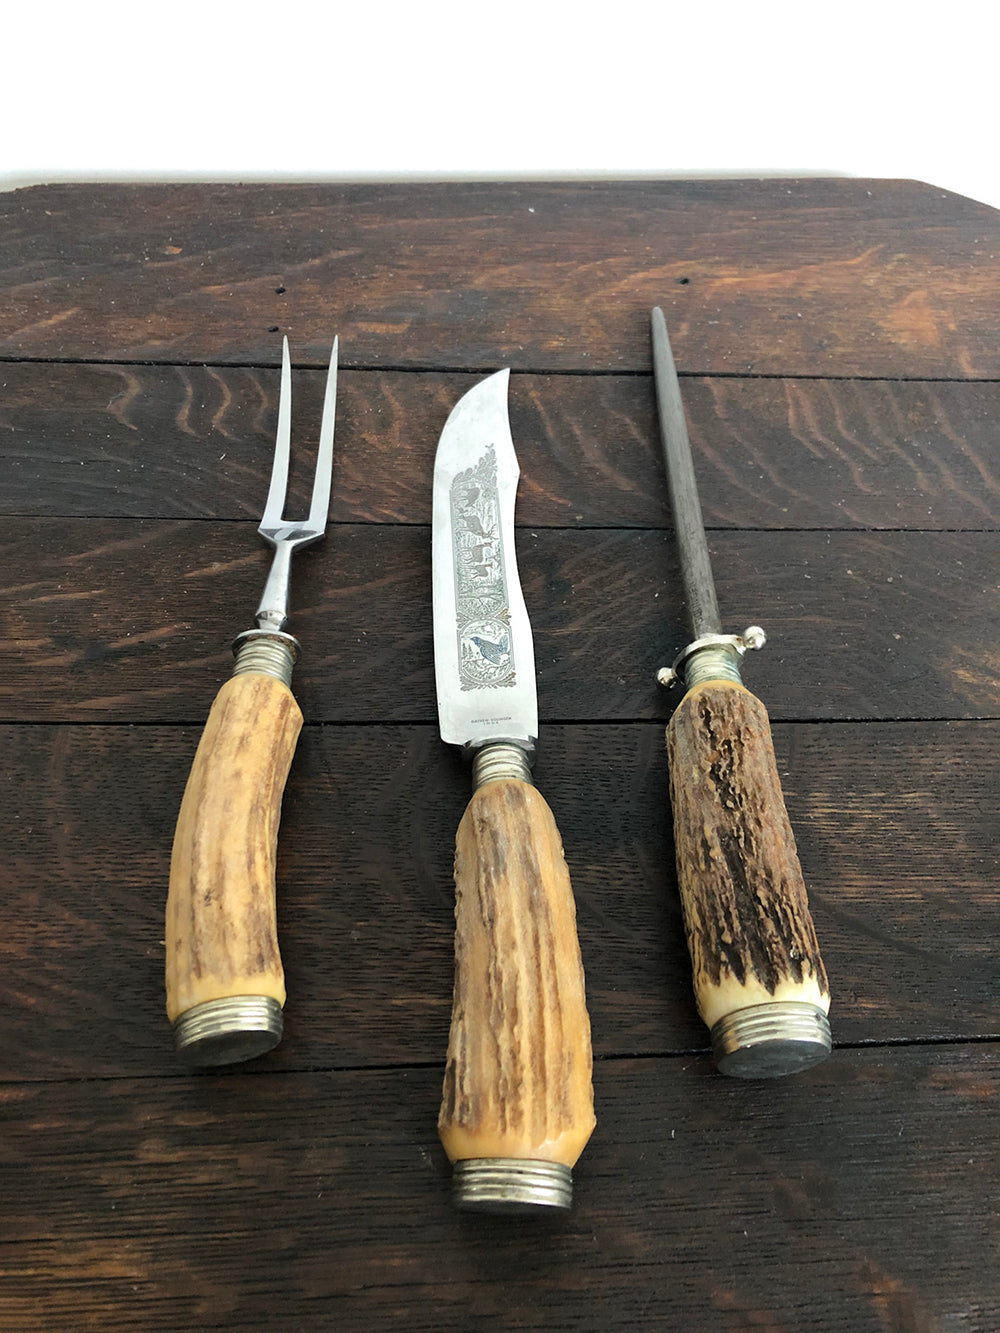 solingen knives wood carving